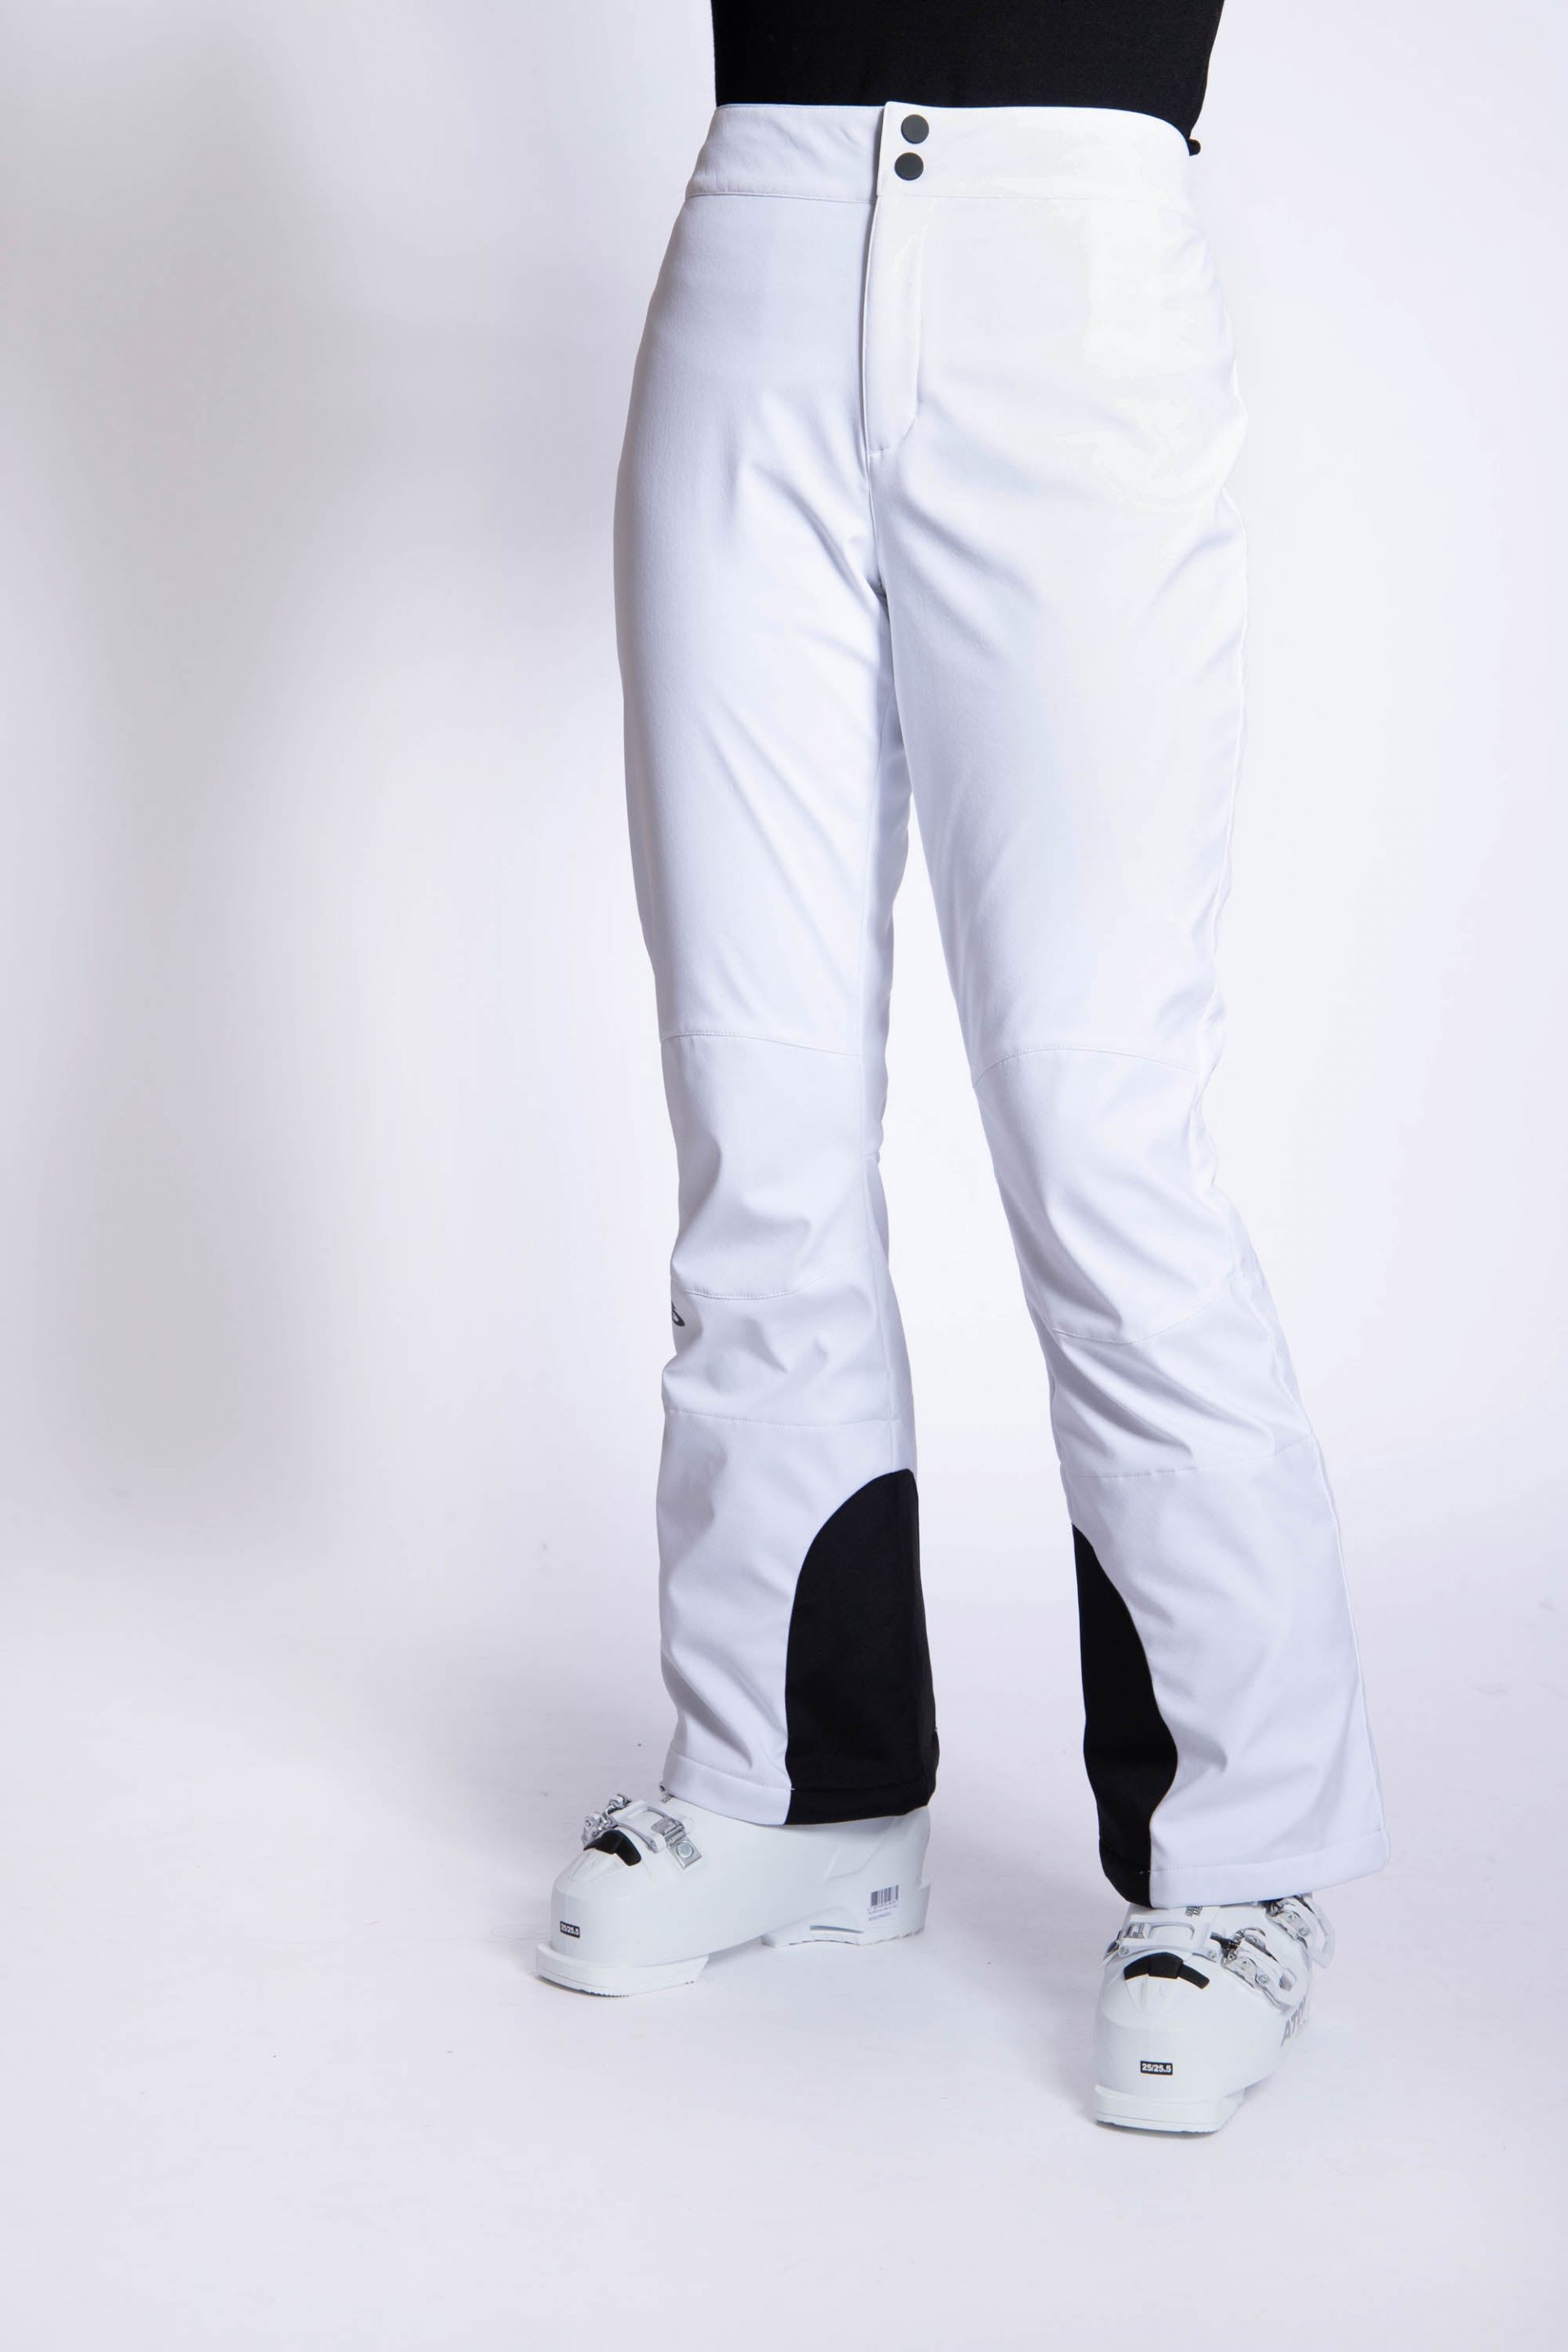 Fab Ski Pants White - Women's - Strobe